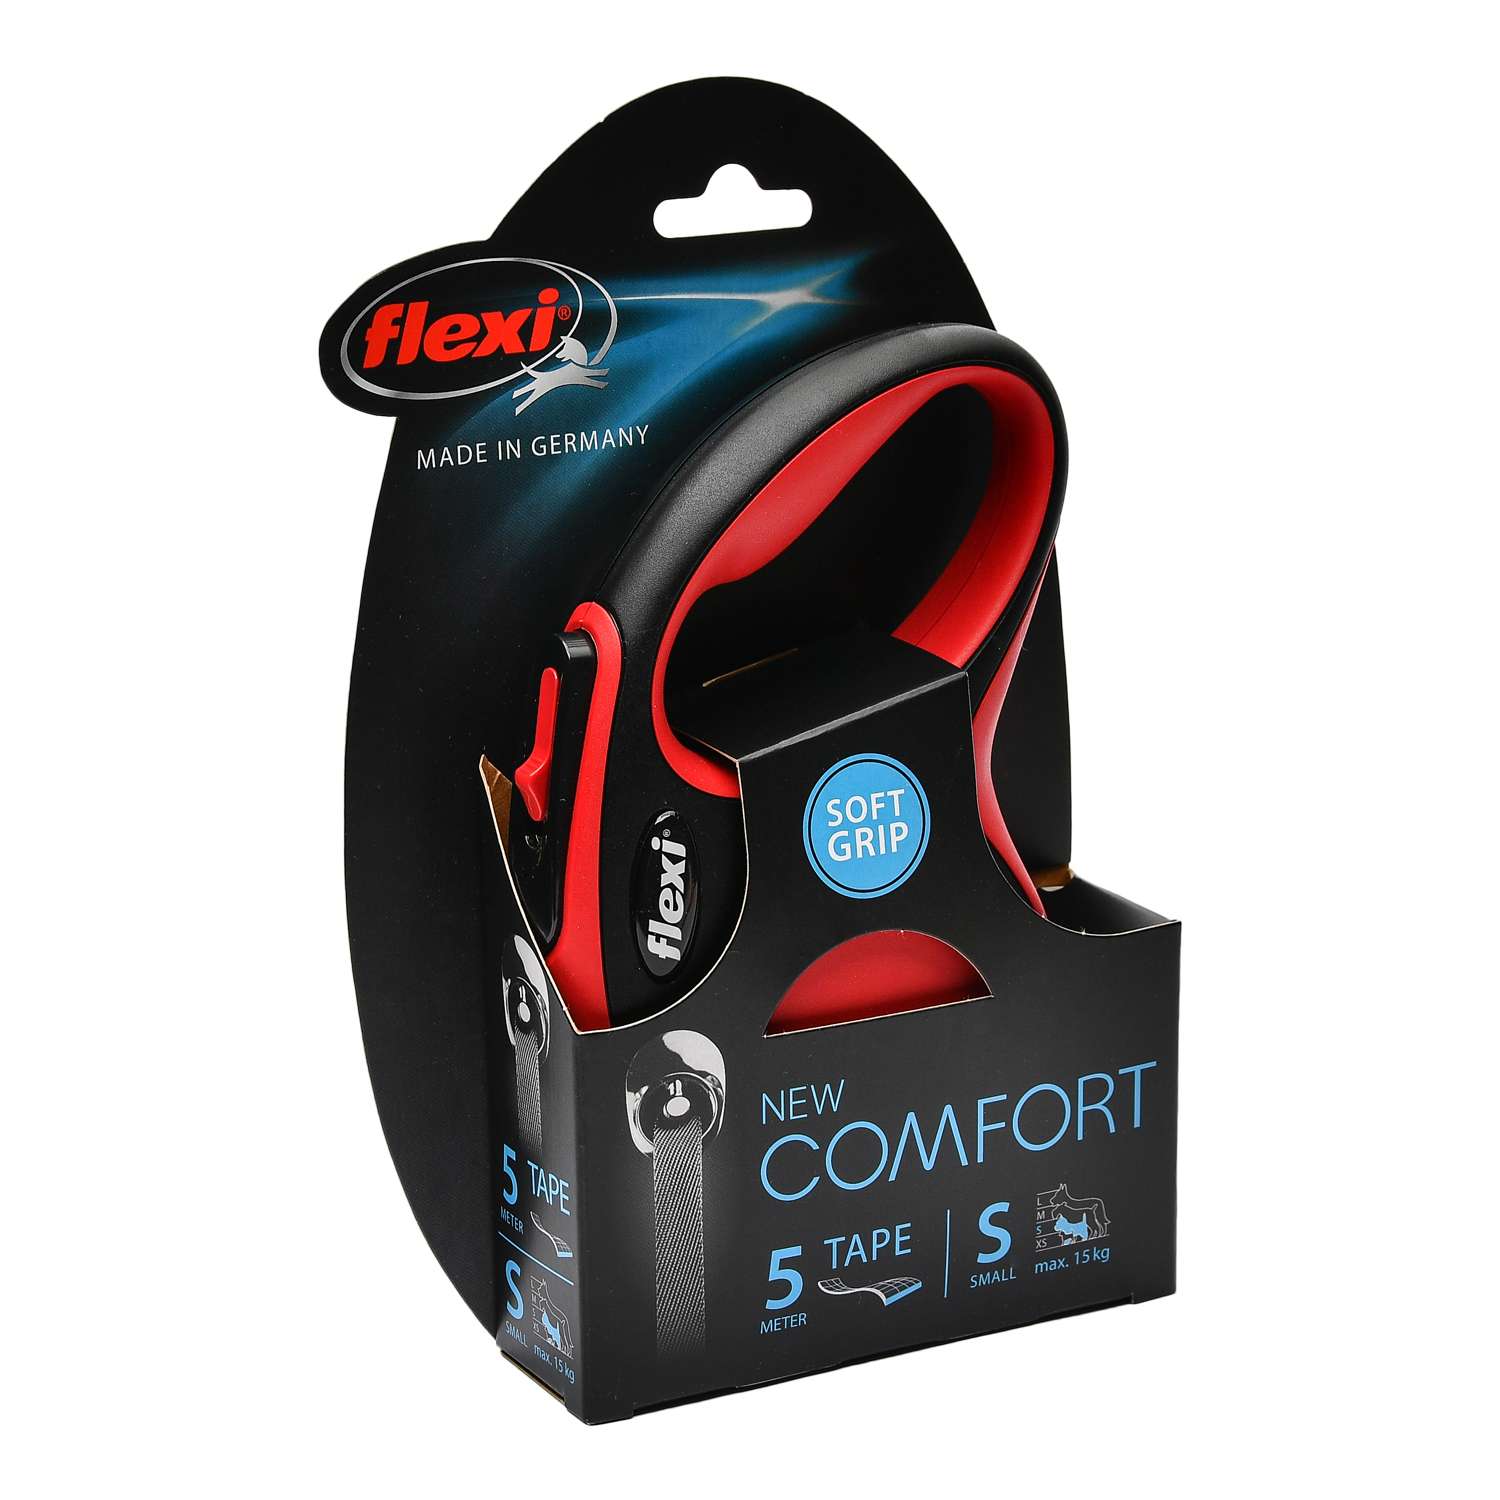 Рулетка Flexi New Comfort S лента 5м до 15кг Черный-Красный - фото 2